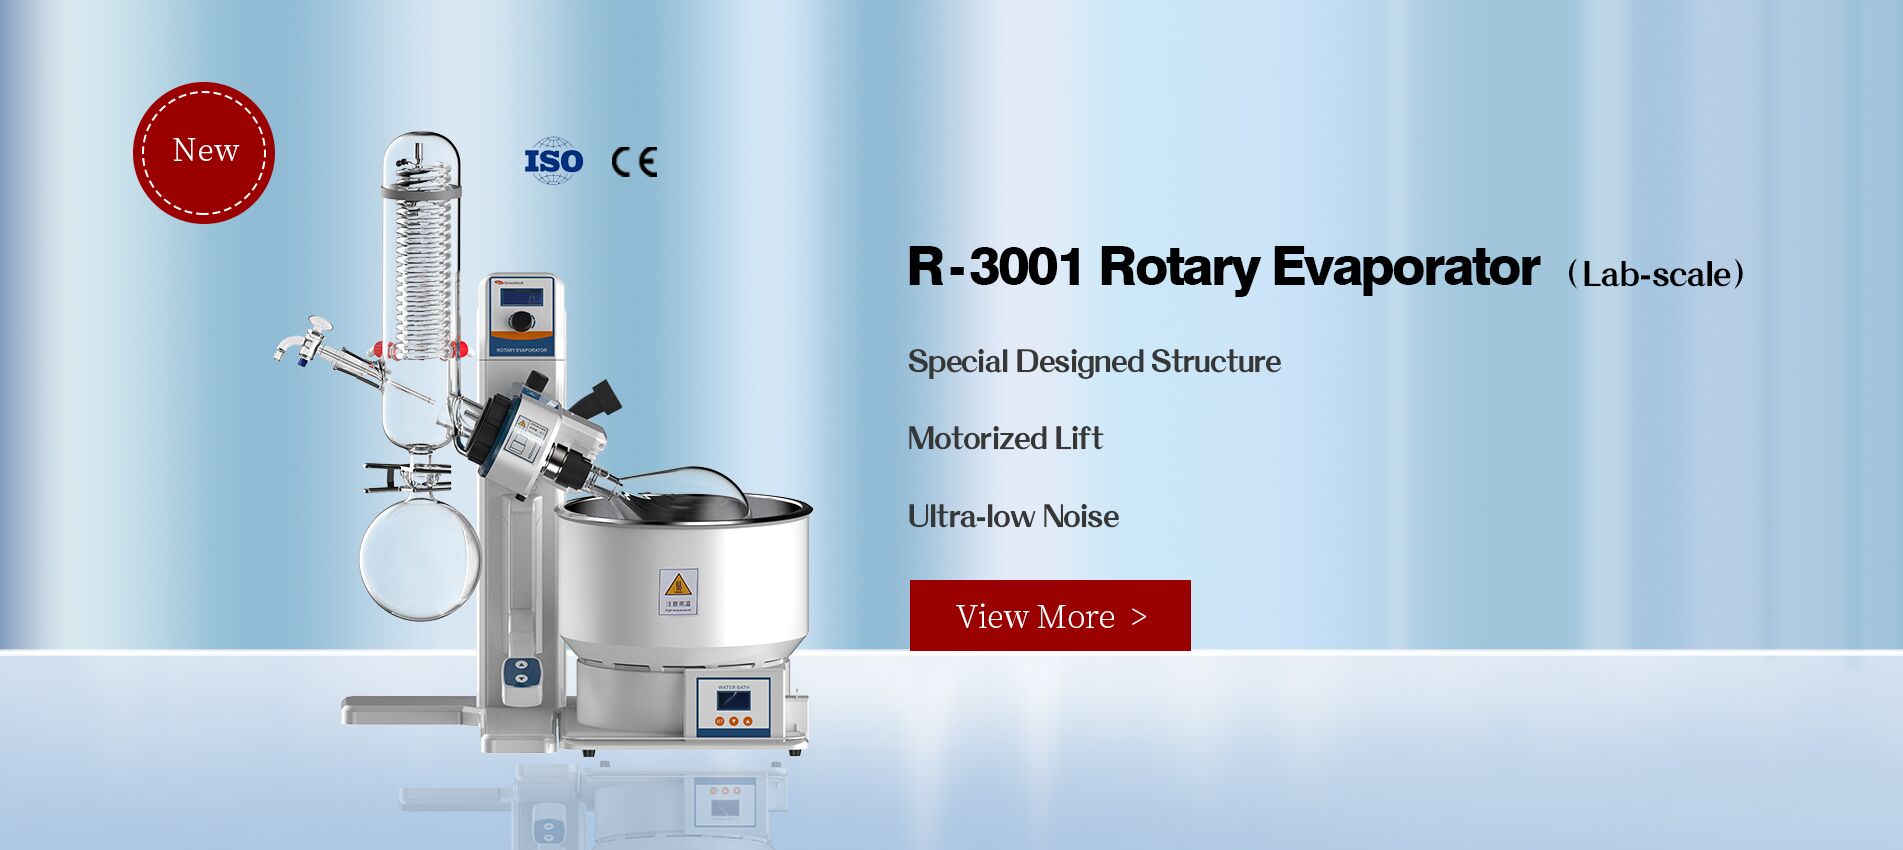 Hệ cô quay chân không (Laboratory Rotary Evaporator) dùng trong PTN với công suất thể tích lên đến 2 Liter., các model điển hình như 1L2L Rotary evaporator R-3001CE